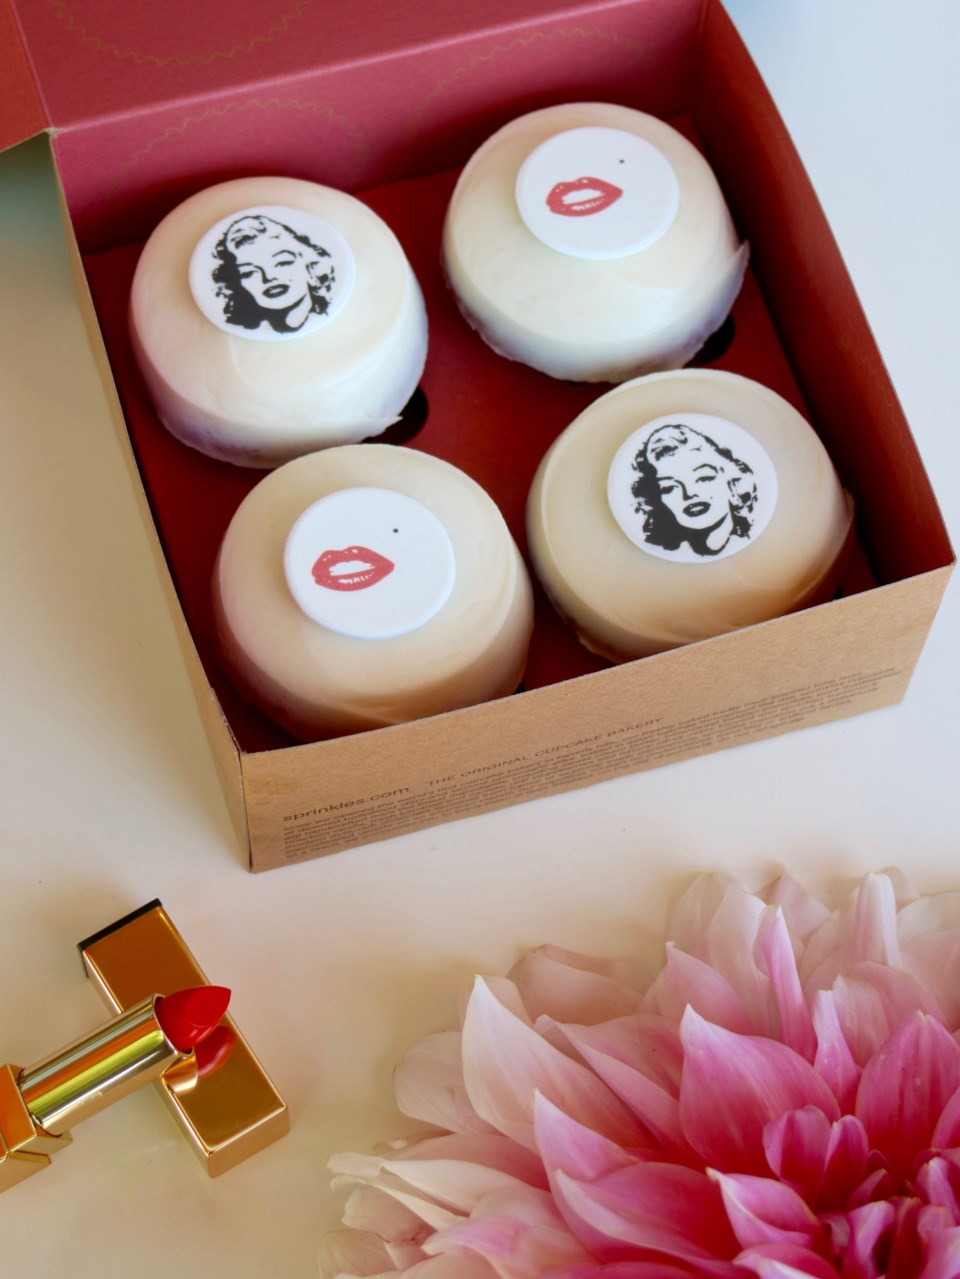 Marilyn Monroe Cupcakes from Sprinkles